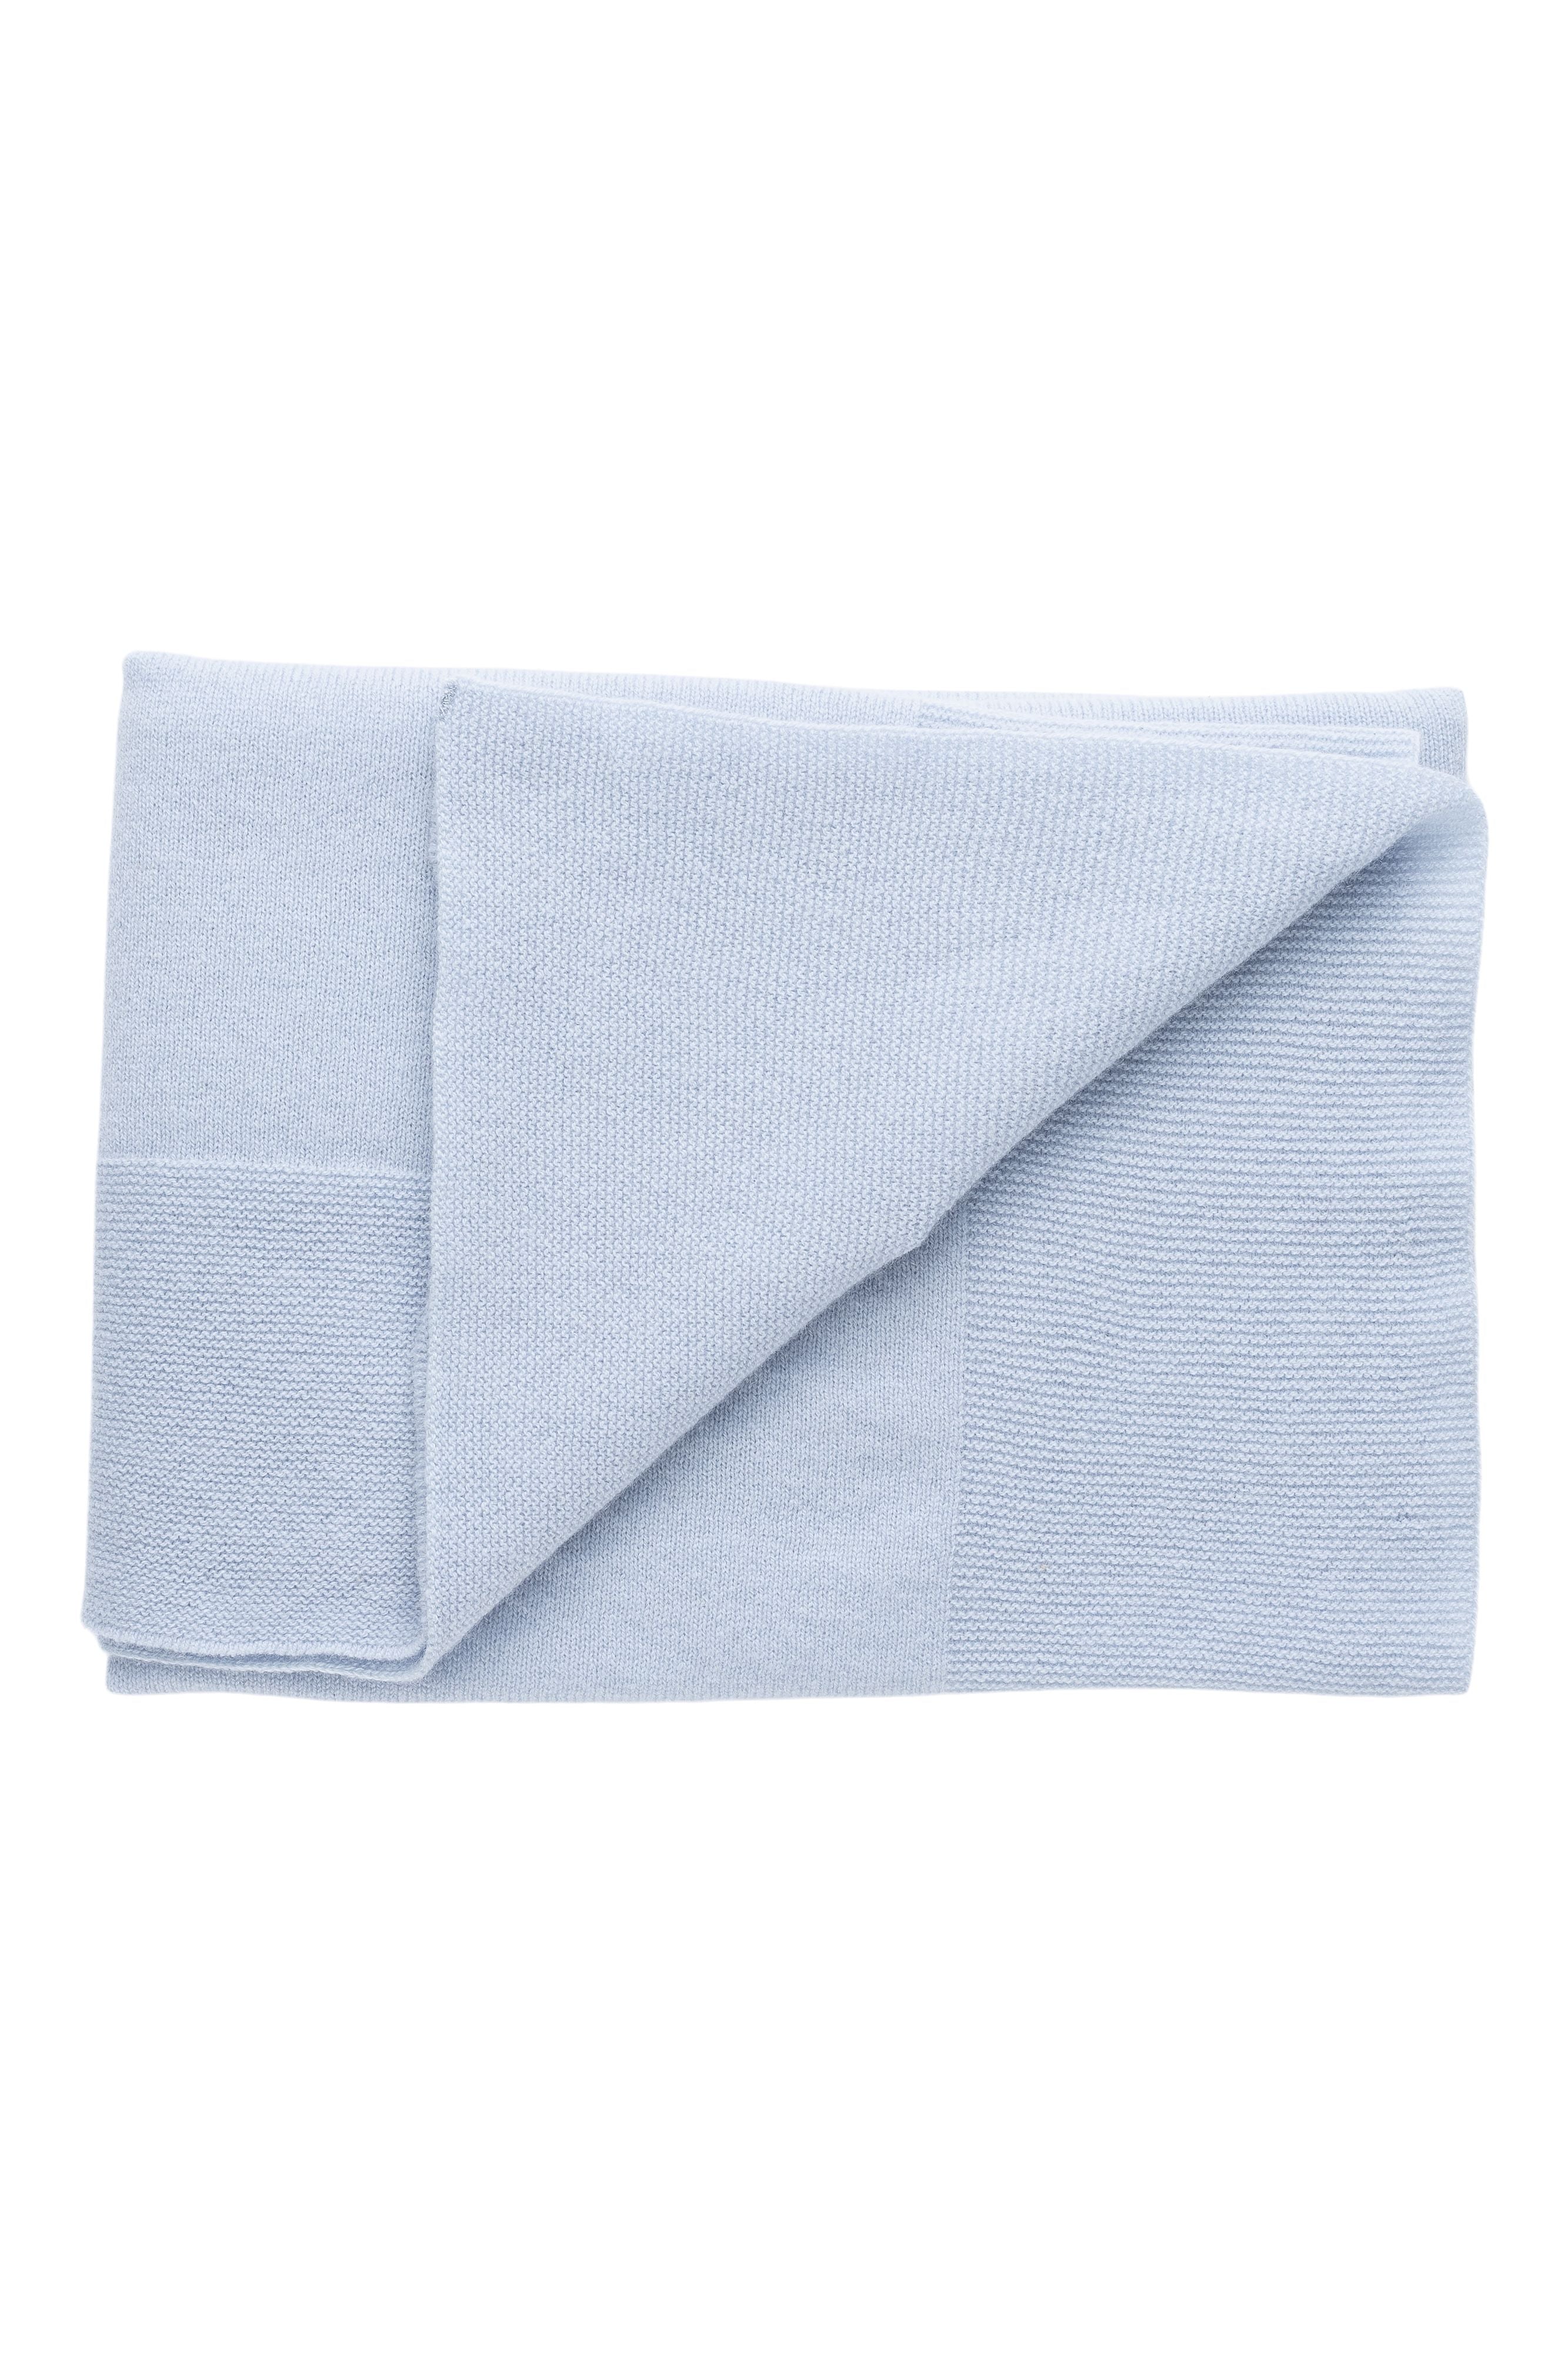 Cashmere Blanket Soft Blue